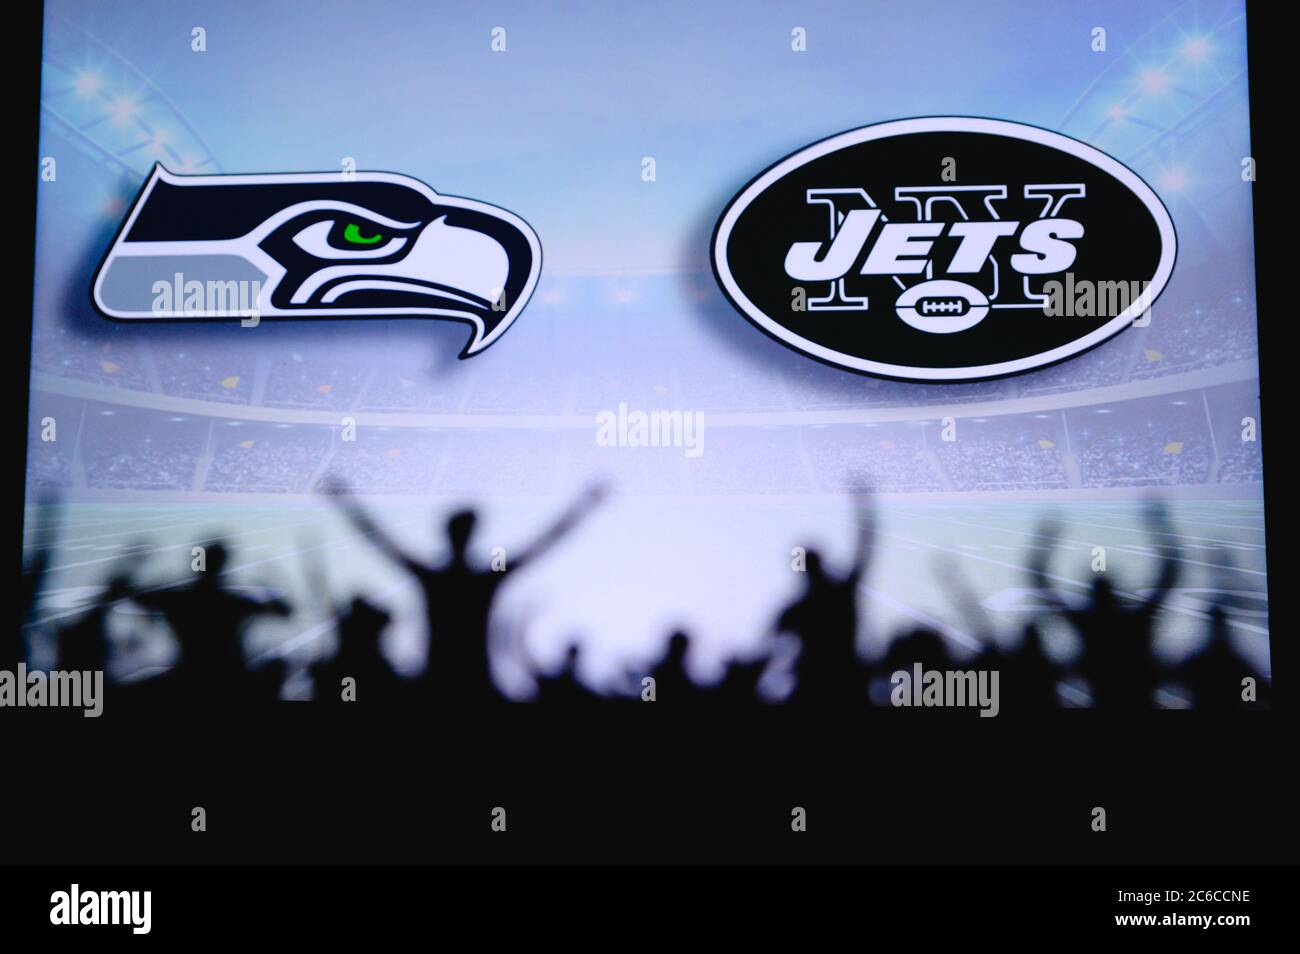 Seattle Seahawks vs. New York Jets. Apoyo de los fans en el NFL Game. Silueta de los seguidores, gran pantalla con dos rivales en el fondo. Foto de stock